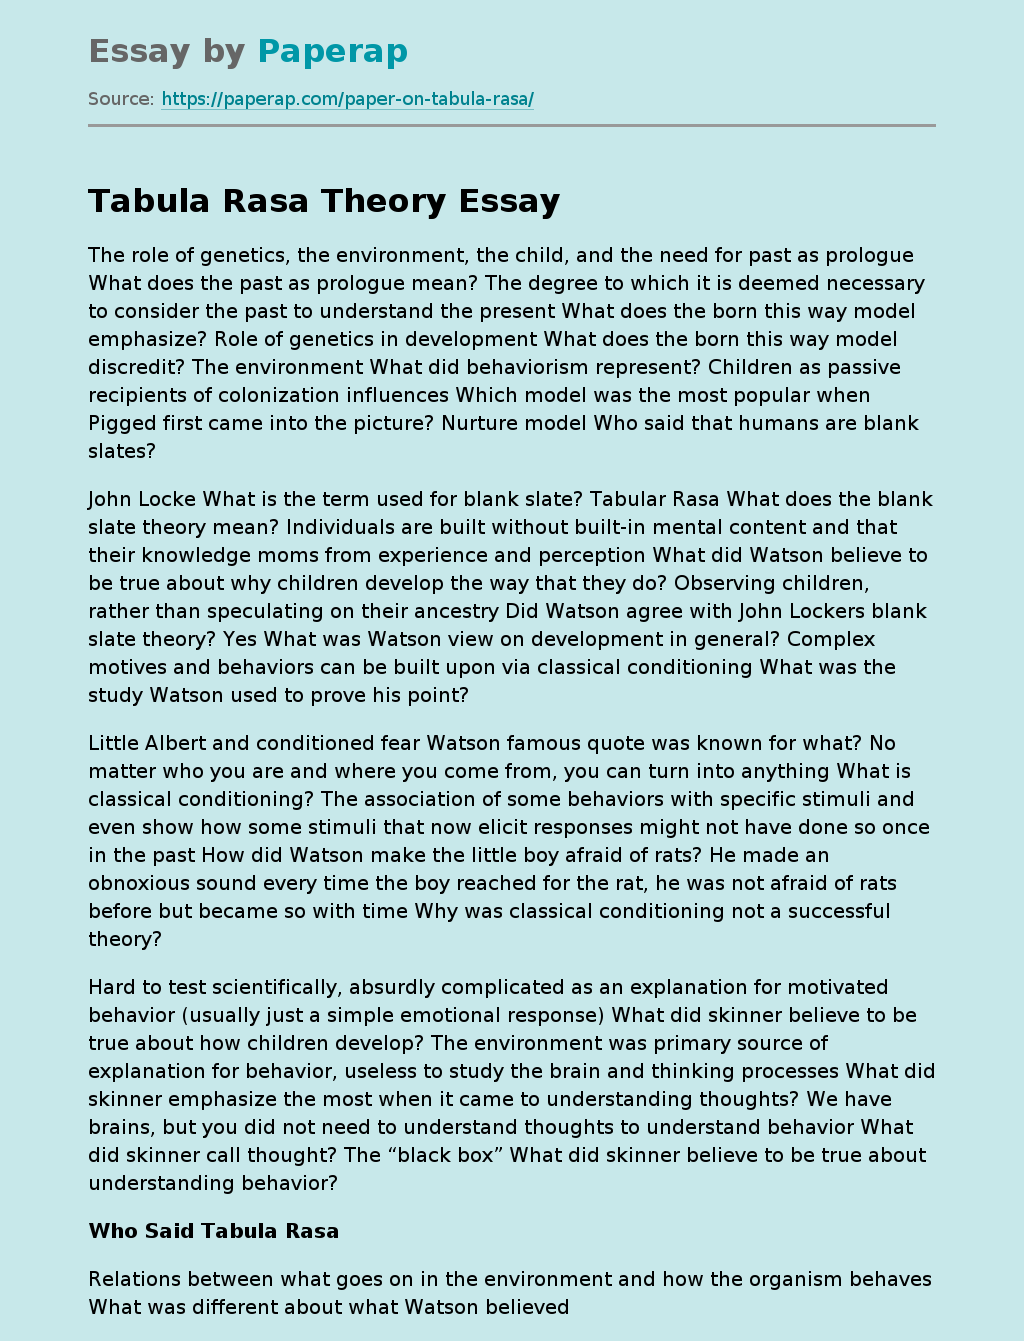 Tabula Rasa Theory